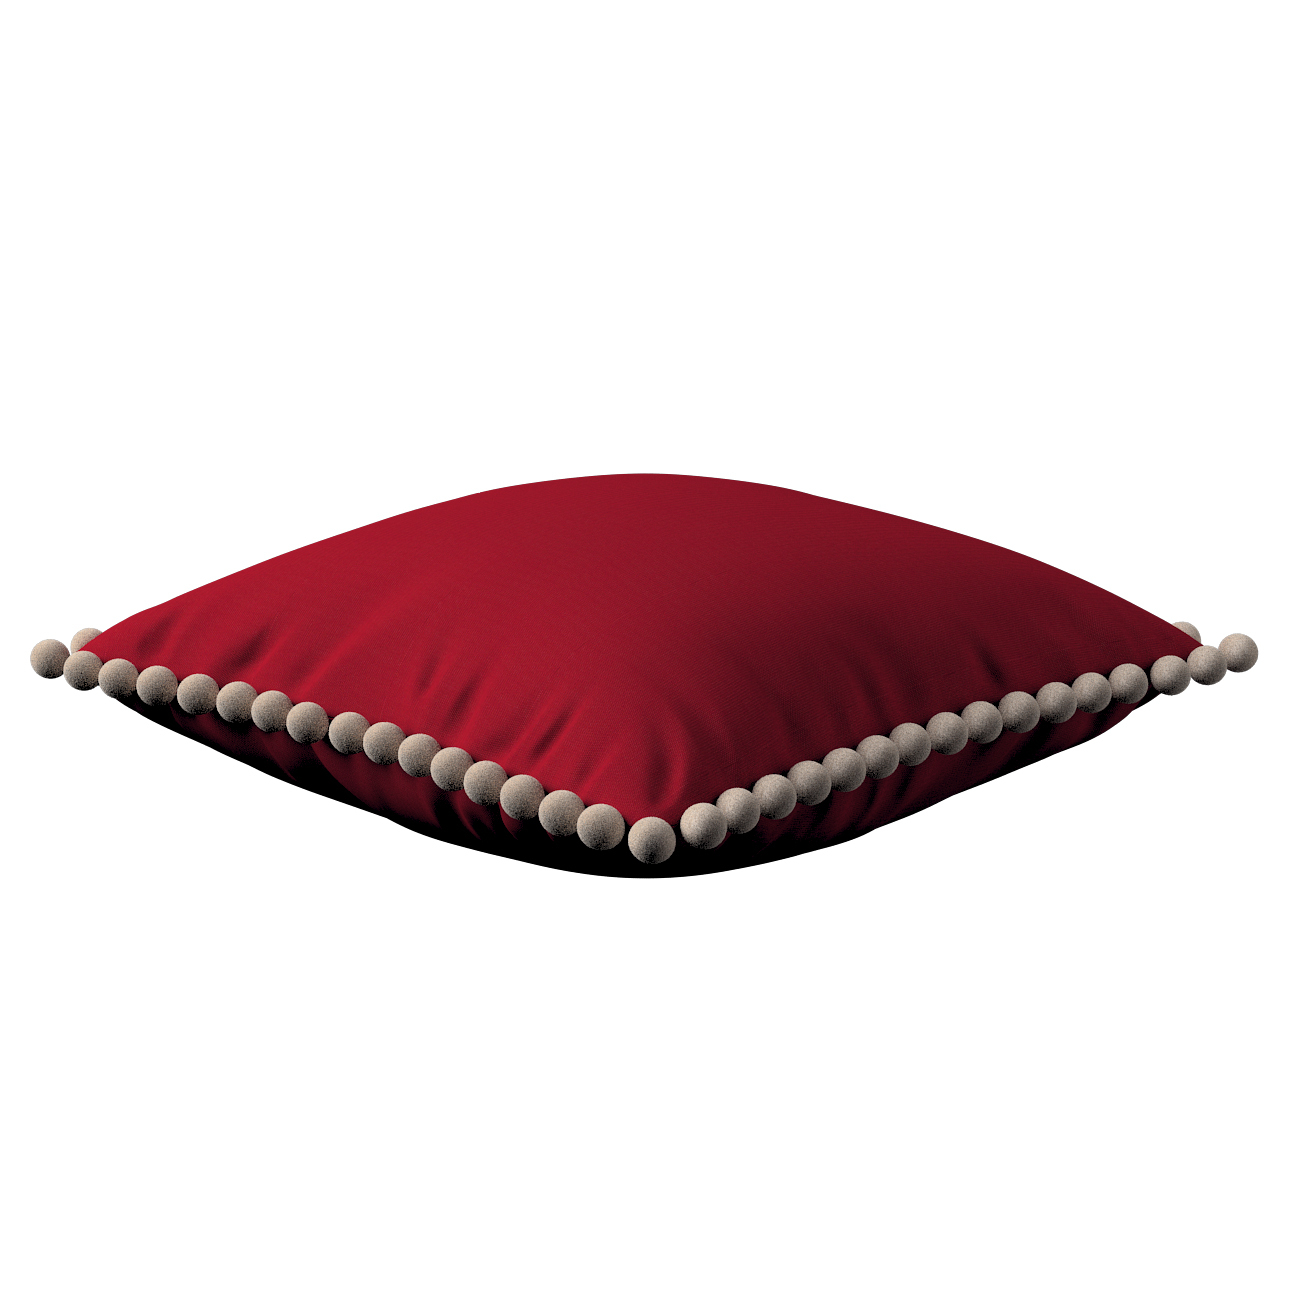 Kissenhülle Wera mit Bommeln, rot, 45 x 45 cm, Etna (705-60) günstig online kaufen